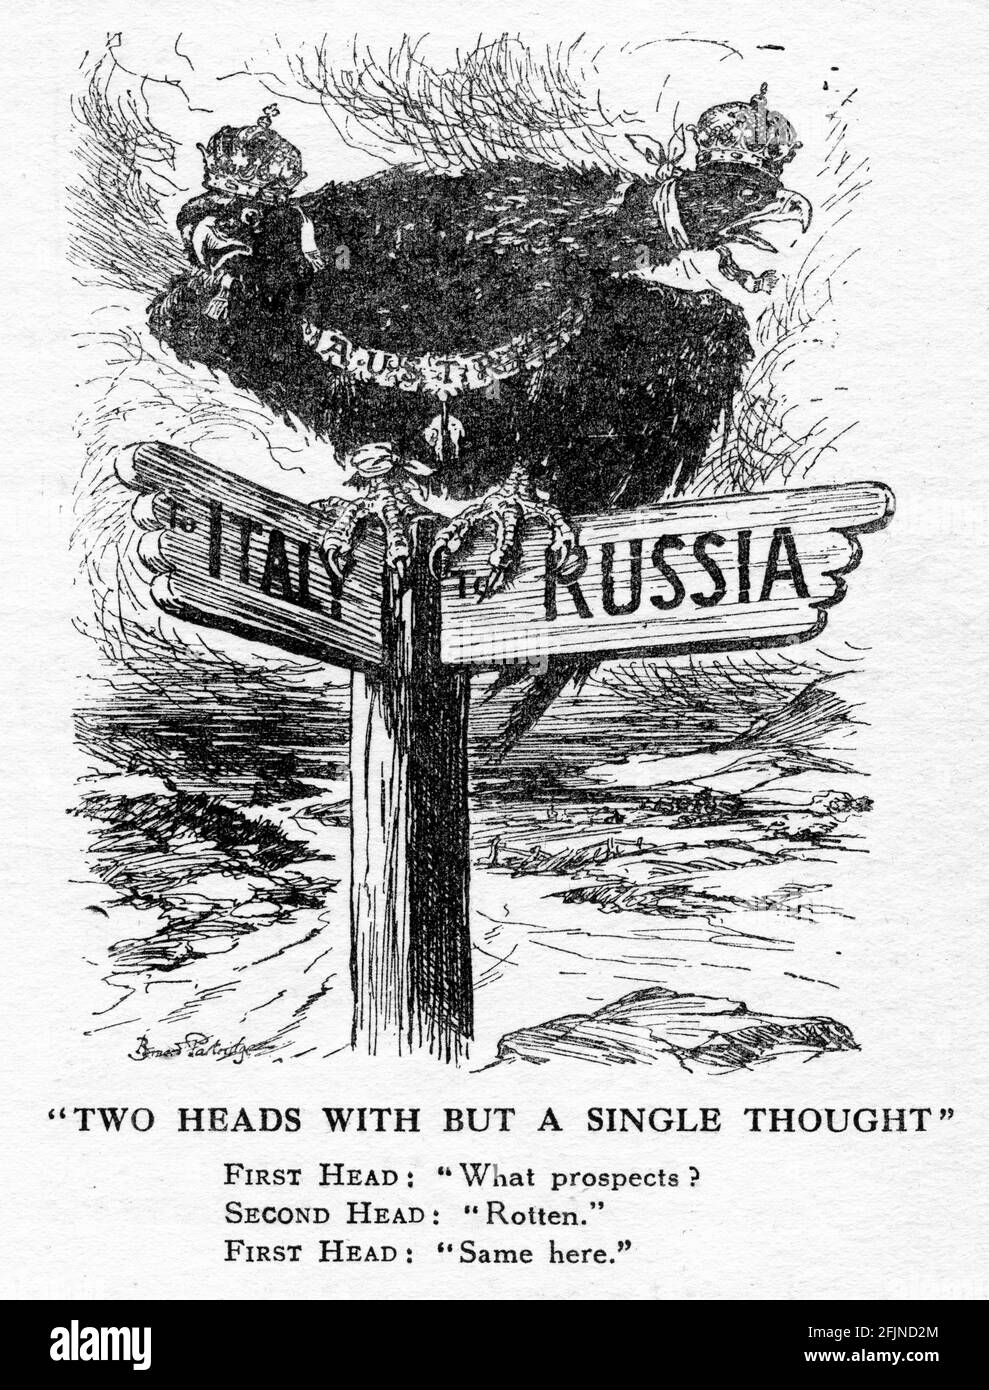 Gravur von Deutschland unter Berücksichtigung ihrer Optionen während des Ersten Weltkriegs. Aus dem Magazin Punch. Stockfoto